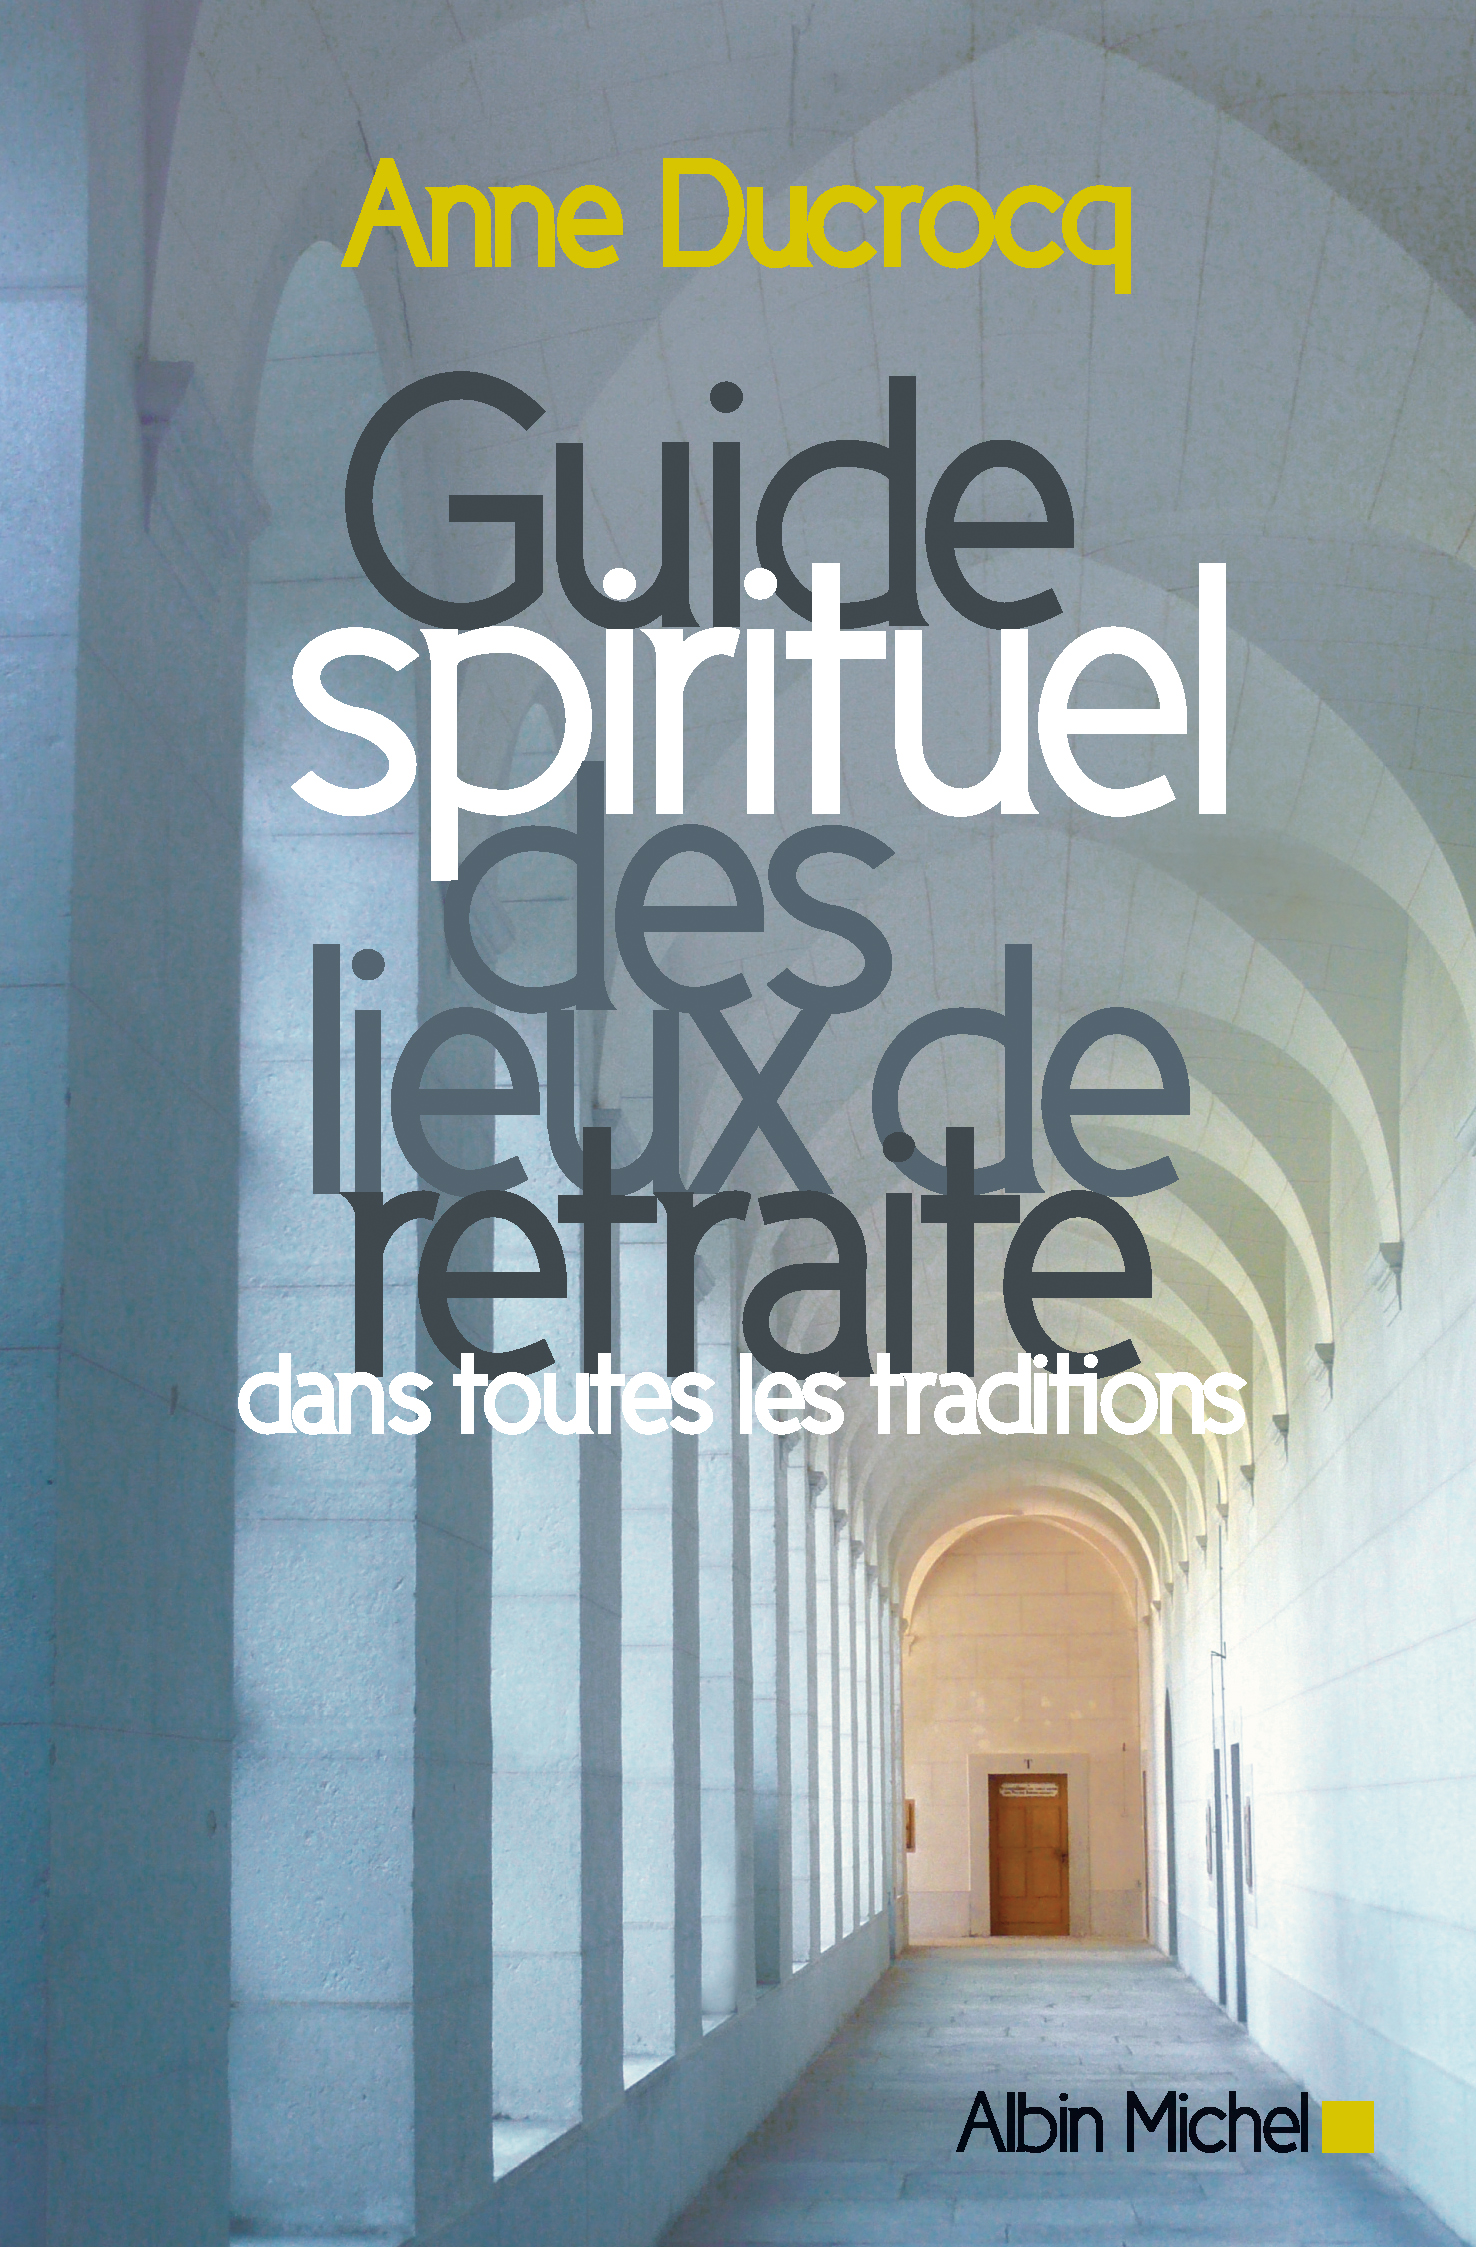 Couverture du livre Guide spirituel des lieux de retraite